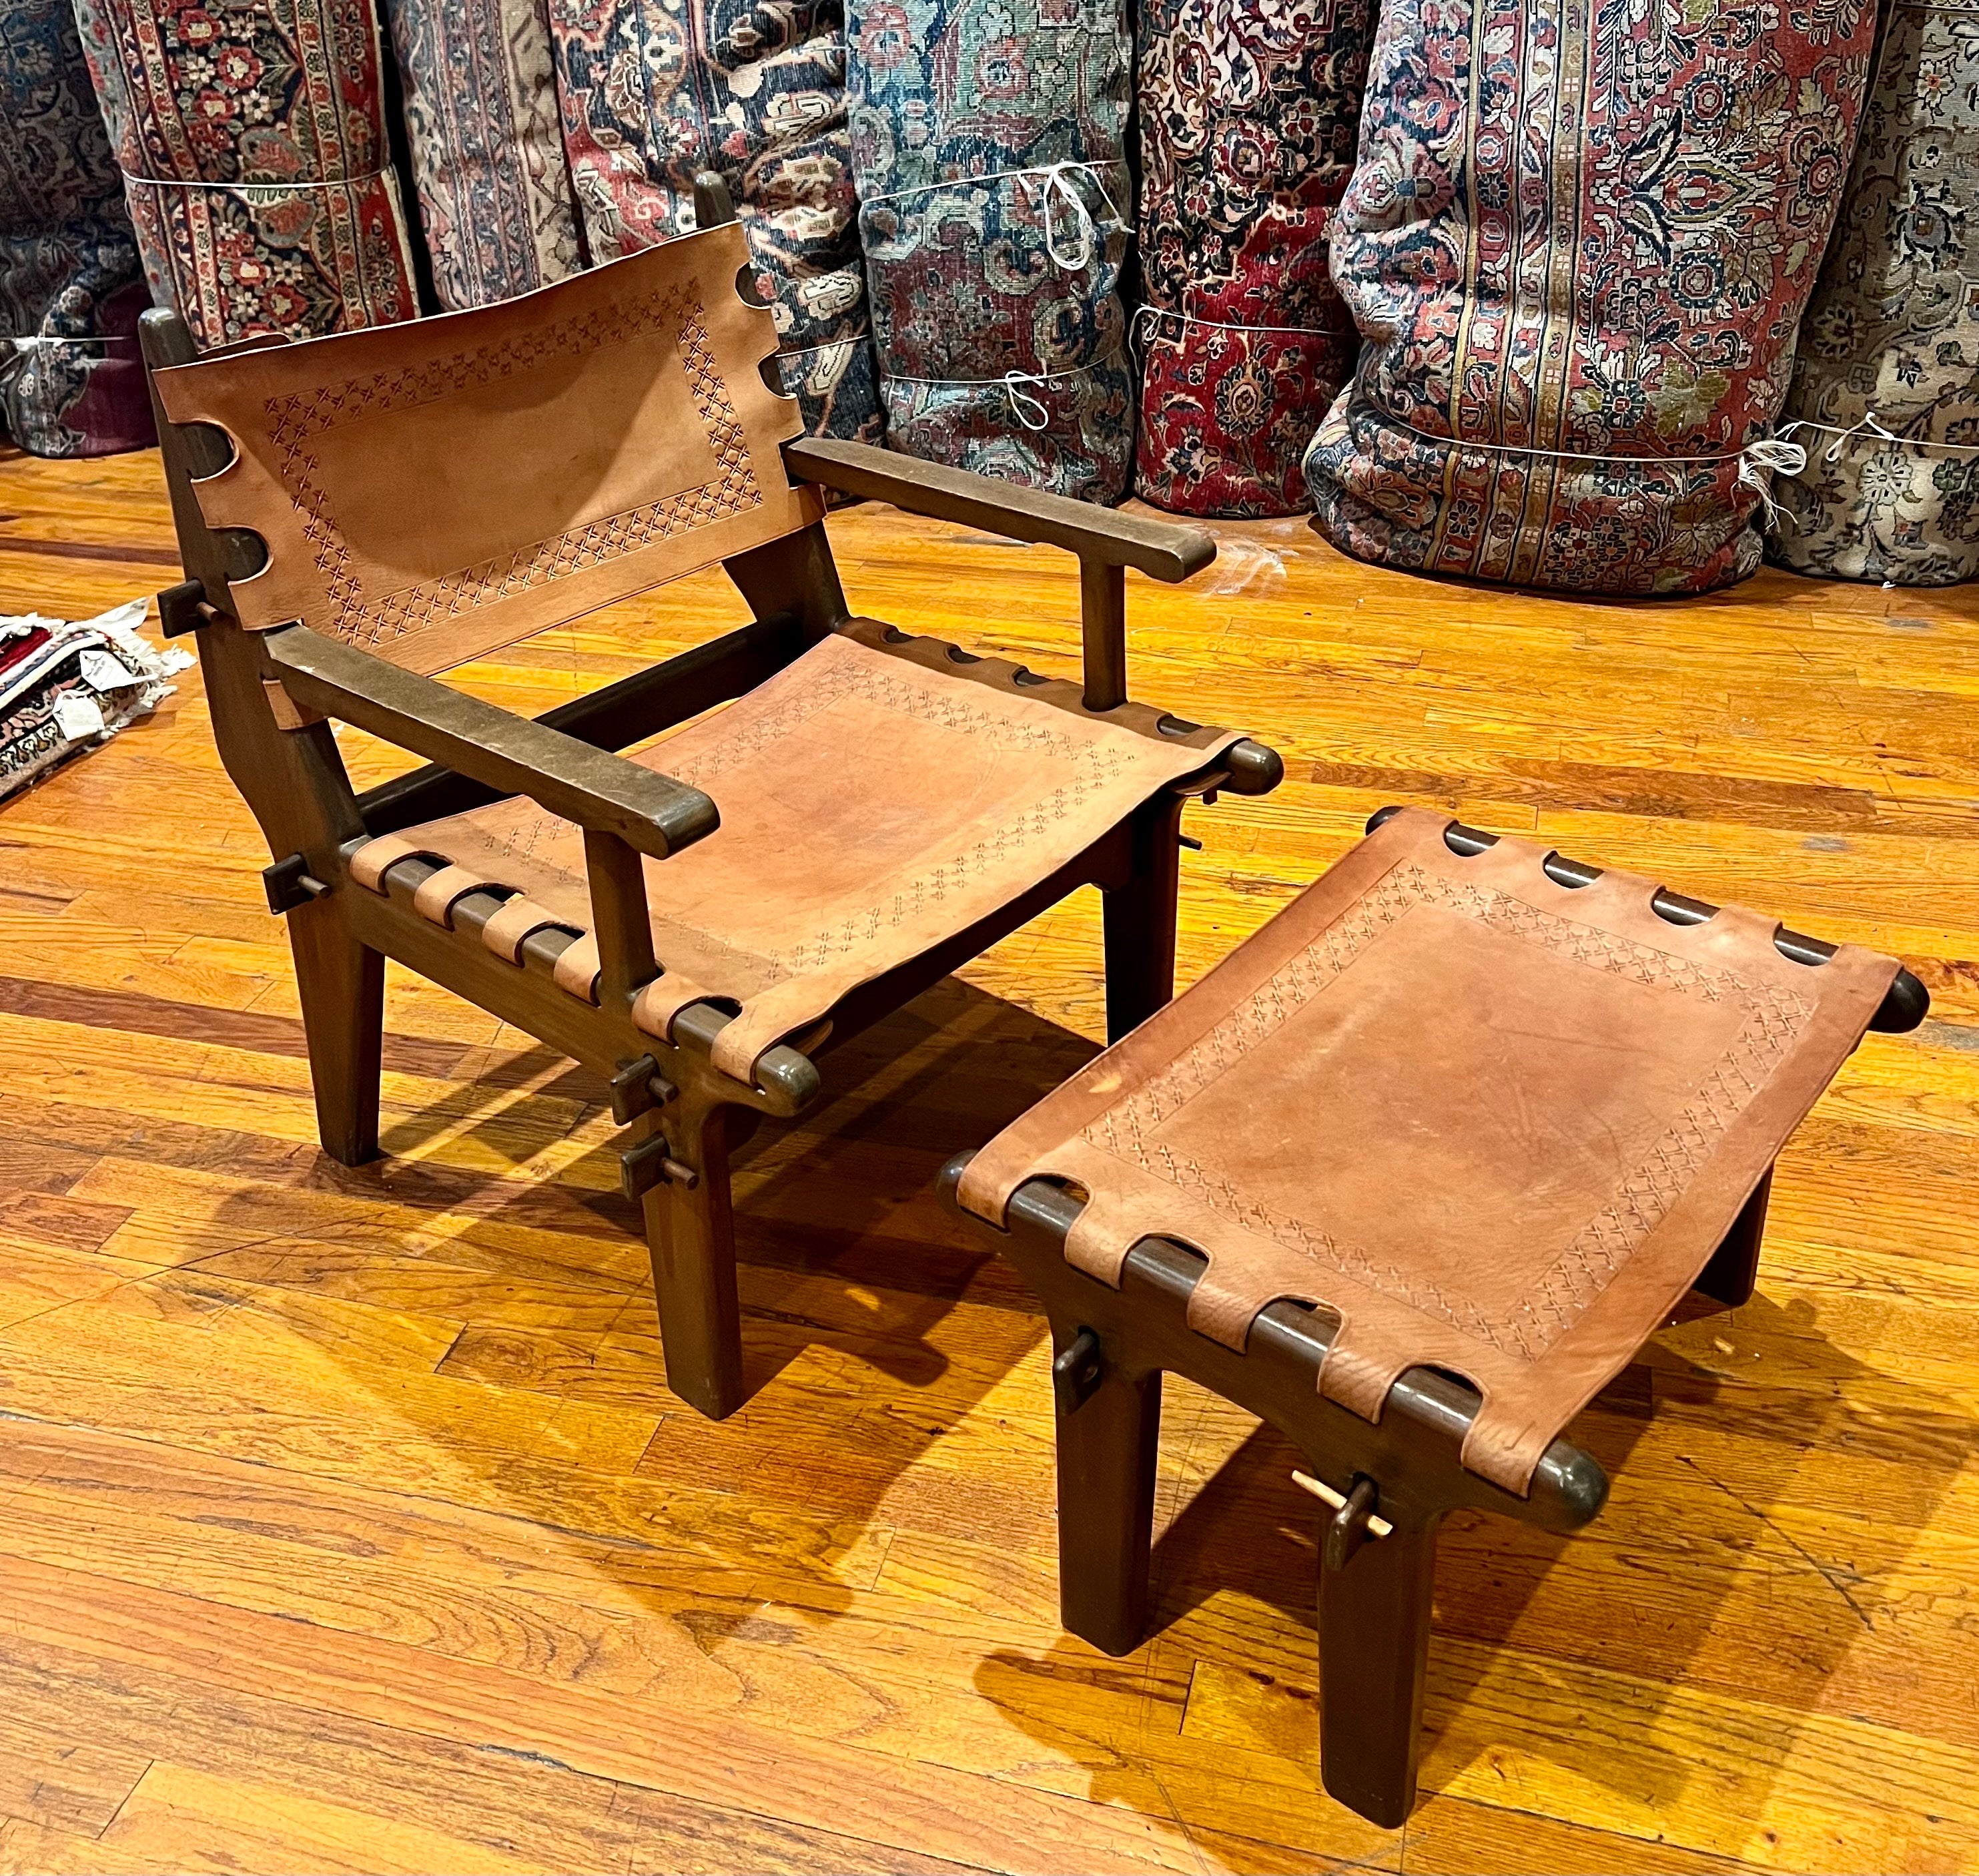 
Magnifique et esthétiquement captivant, ce fauteuil lounge et ottoman du milieu du siècle, unique en son genre, créé par l'Equatorien Angel Pazmino, est la quintessence de l'art fonctionnel. Fabriqué par des artisans à partir de bois durs tropicaux